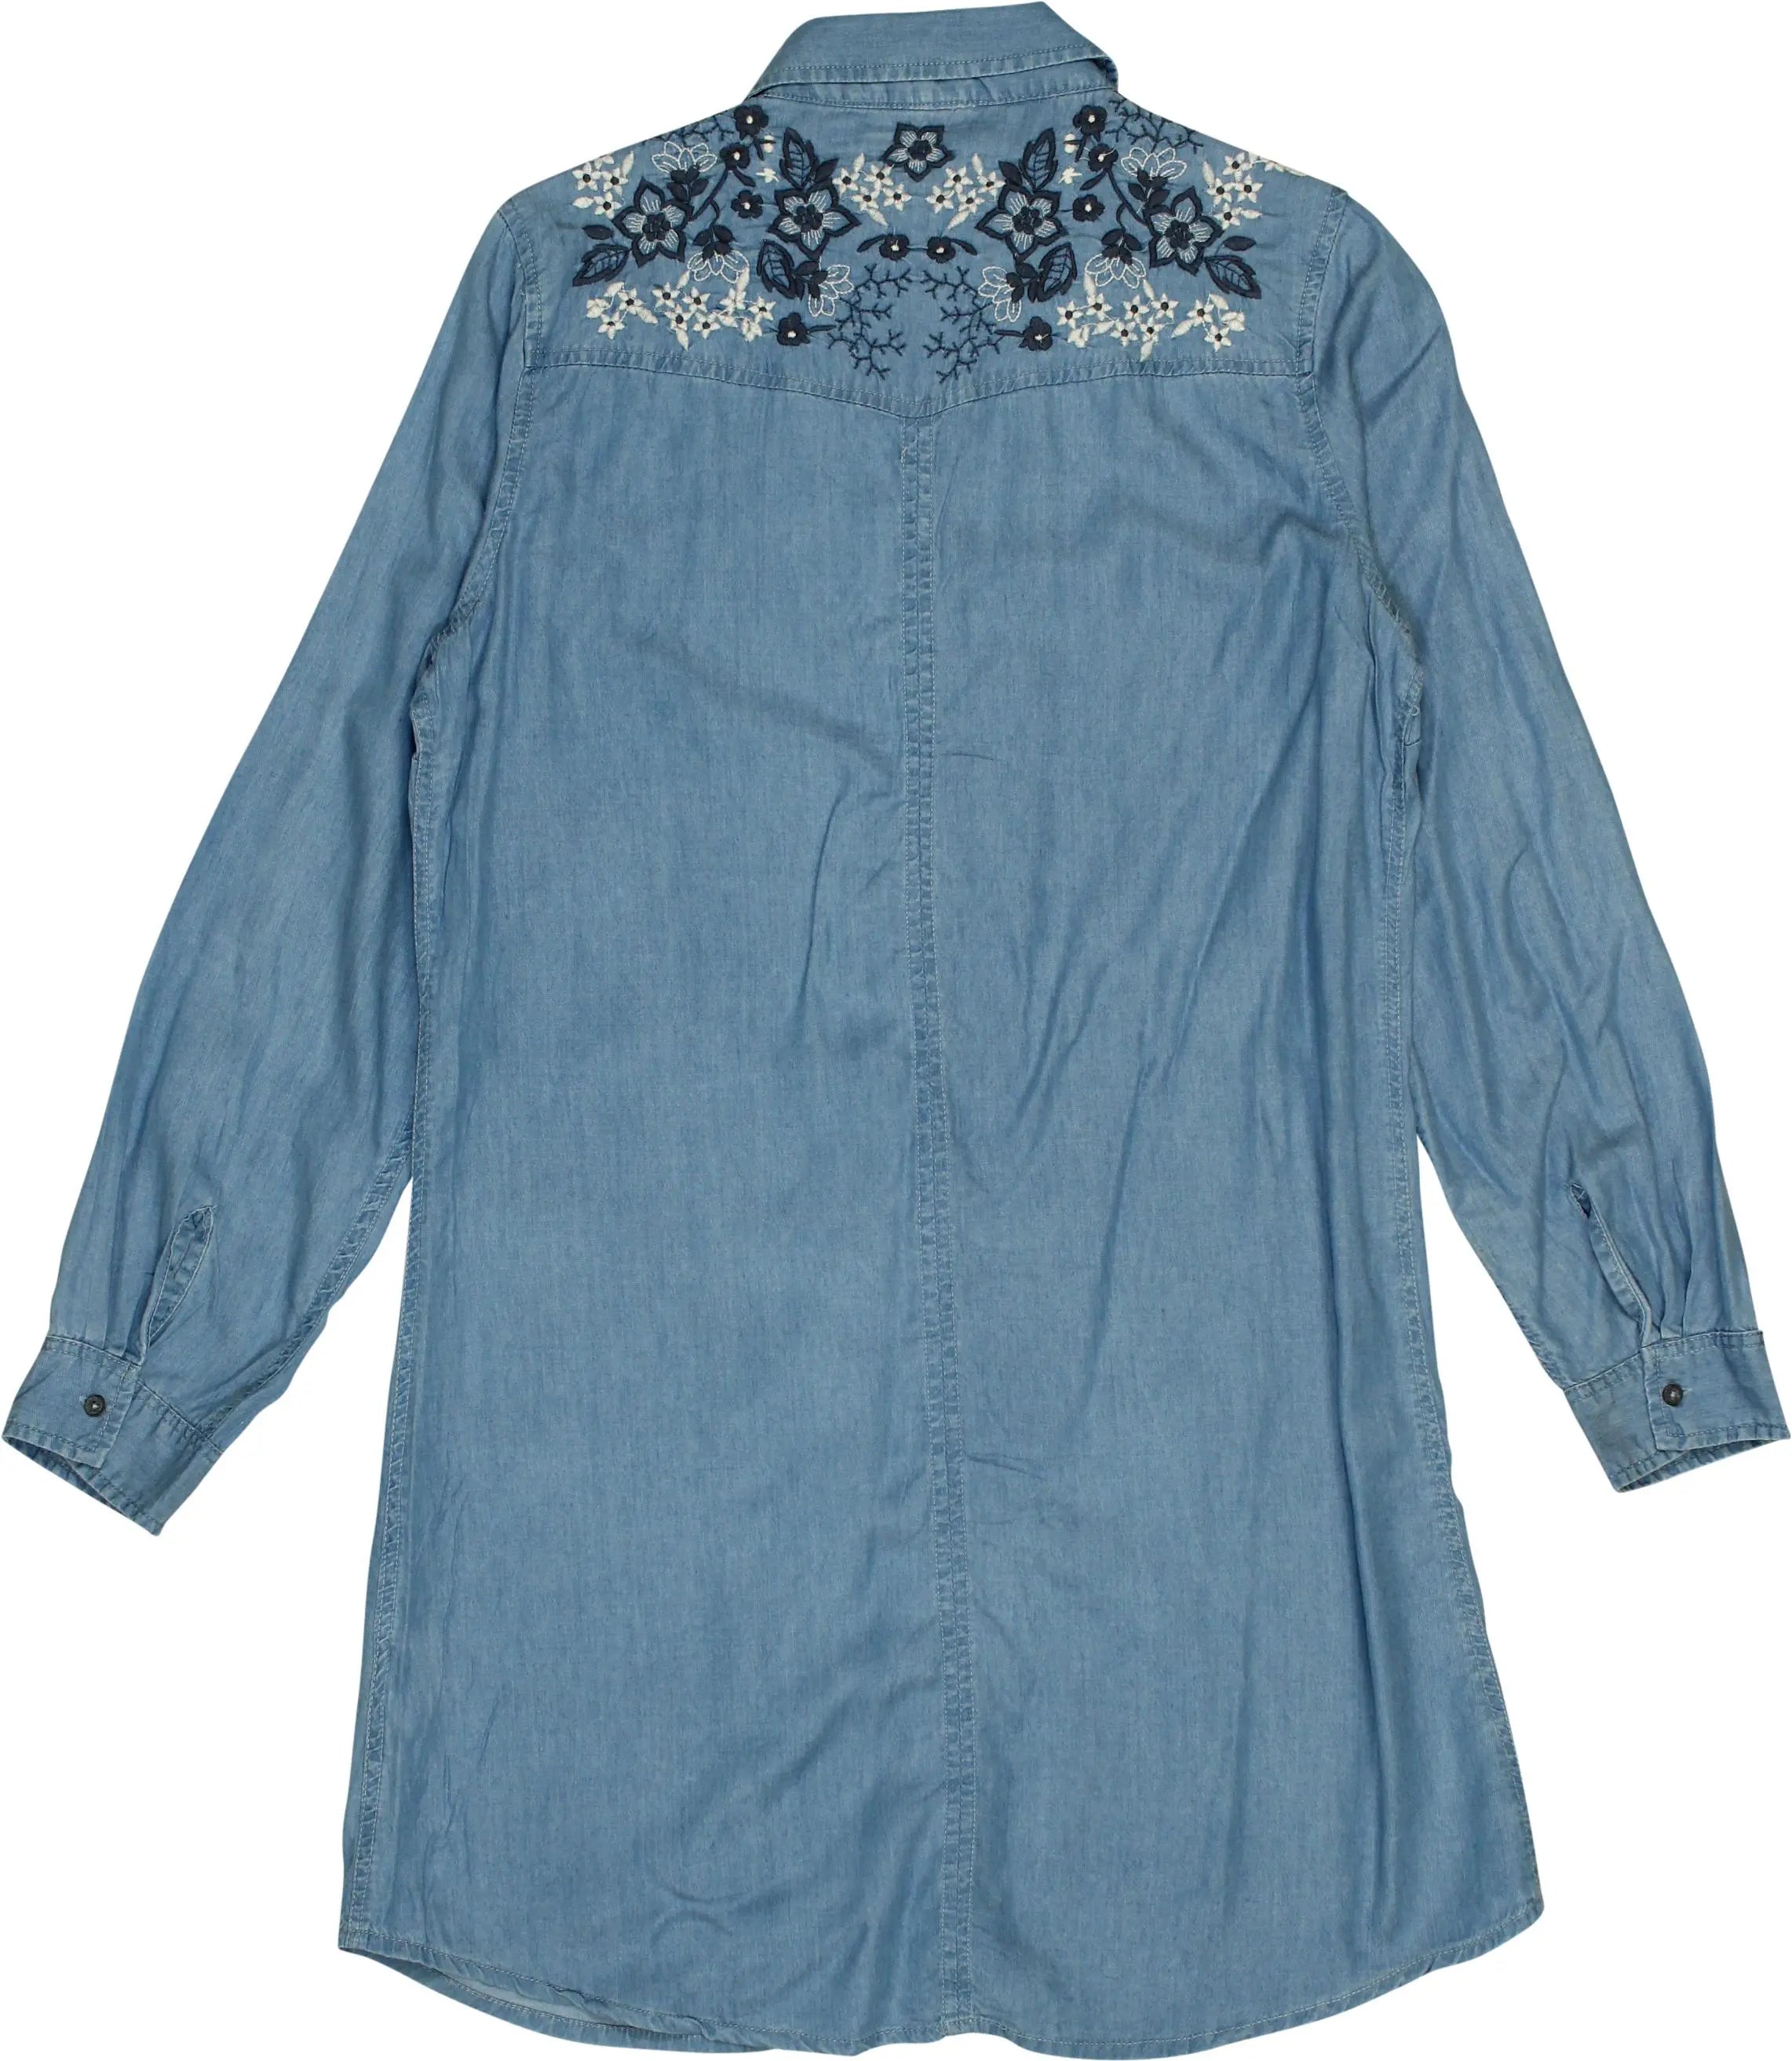 Eksept - Denim Dress- ThriftTale.com - Vintage and second handclothing